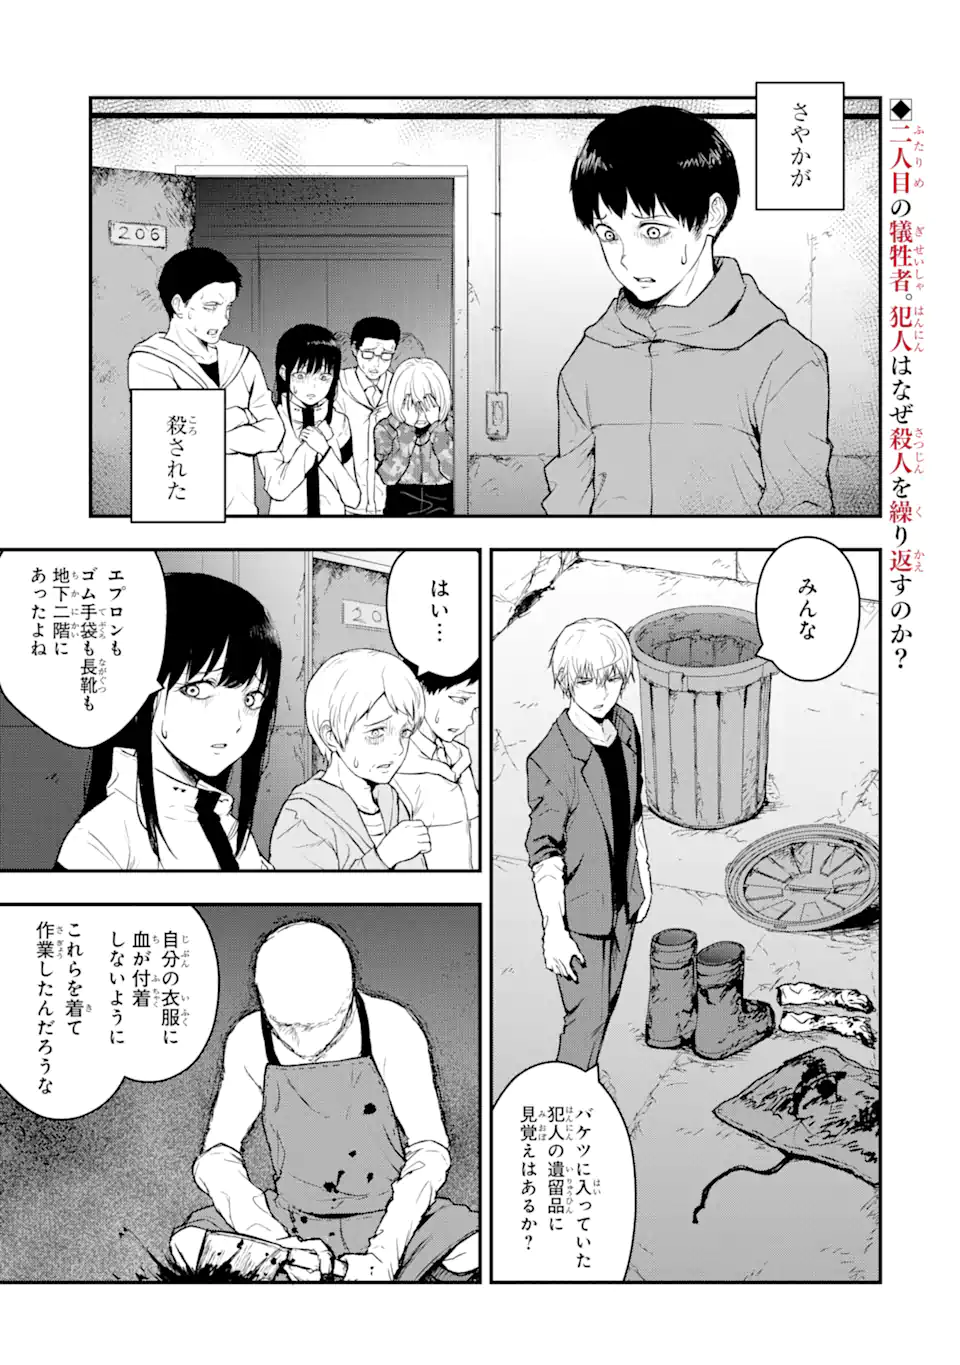 Hakobune – Shinubeki na no wa Dare ka? - Chapter 6.1 - Page 2